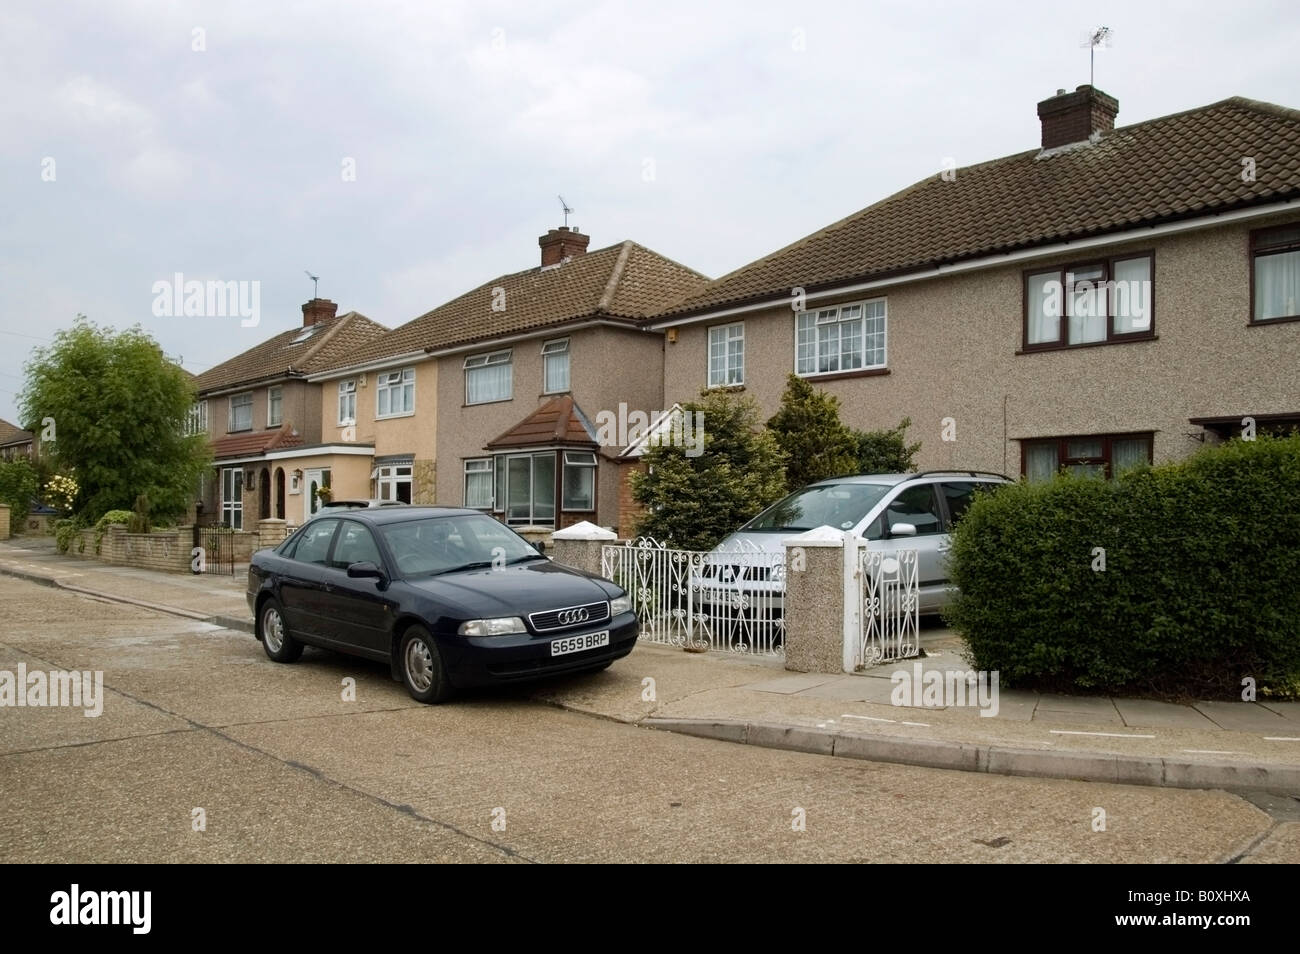 Fila di strada residenziale e case a schiera di 40s, 50s architettura, Collier Row, Romford, Essex, Regno Unito, GB, Inghilterra, UE Foto Stock